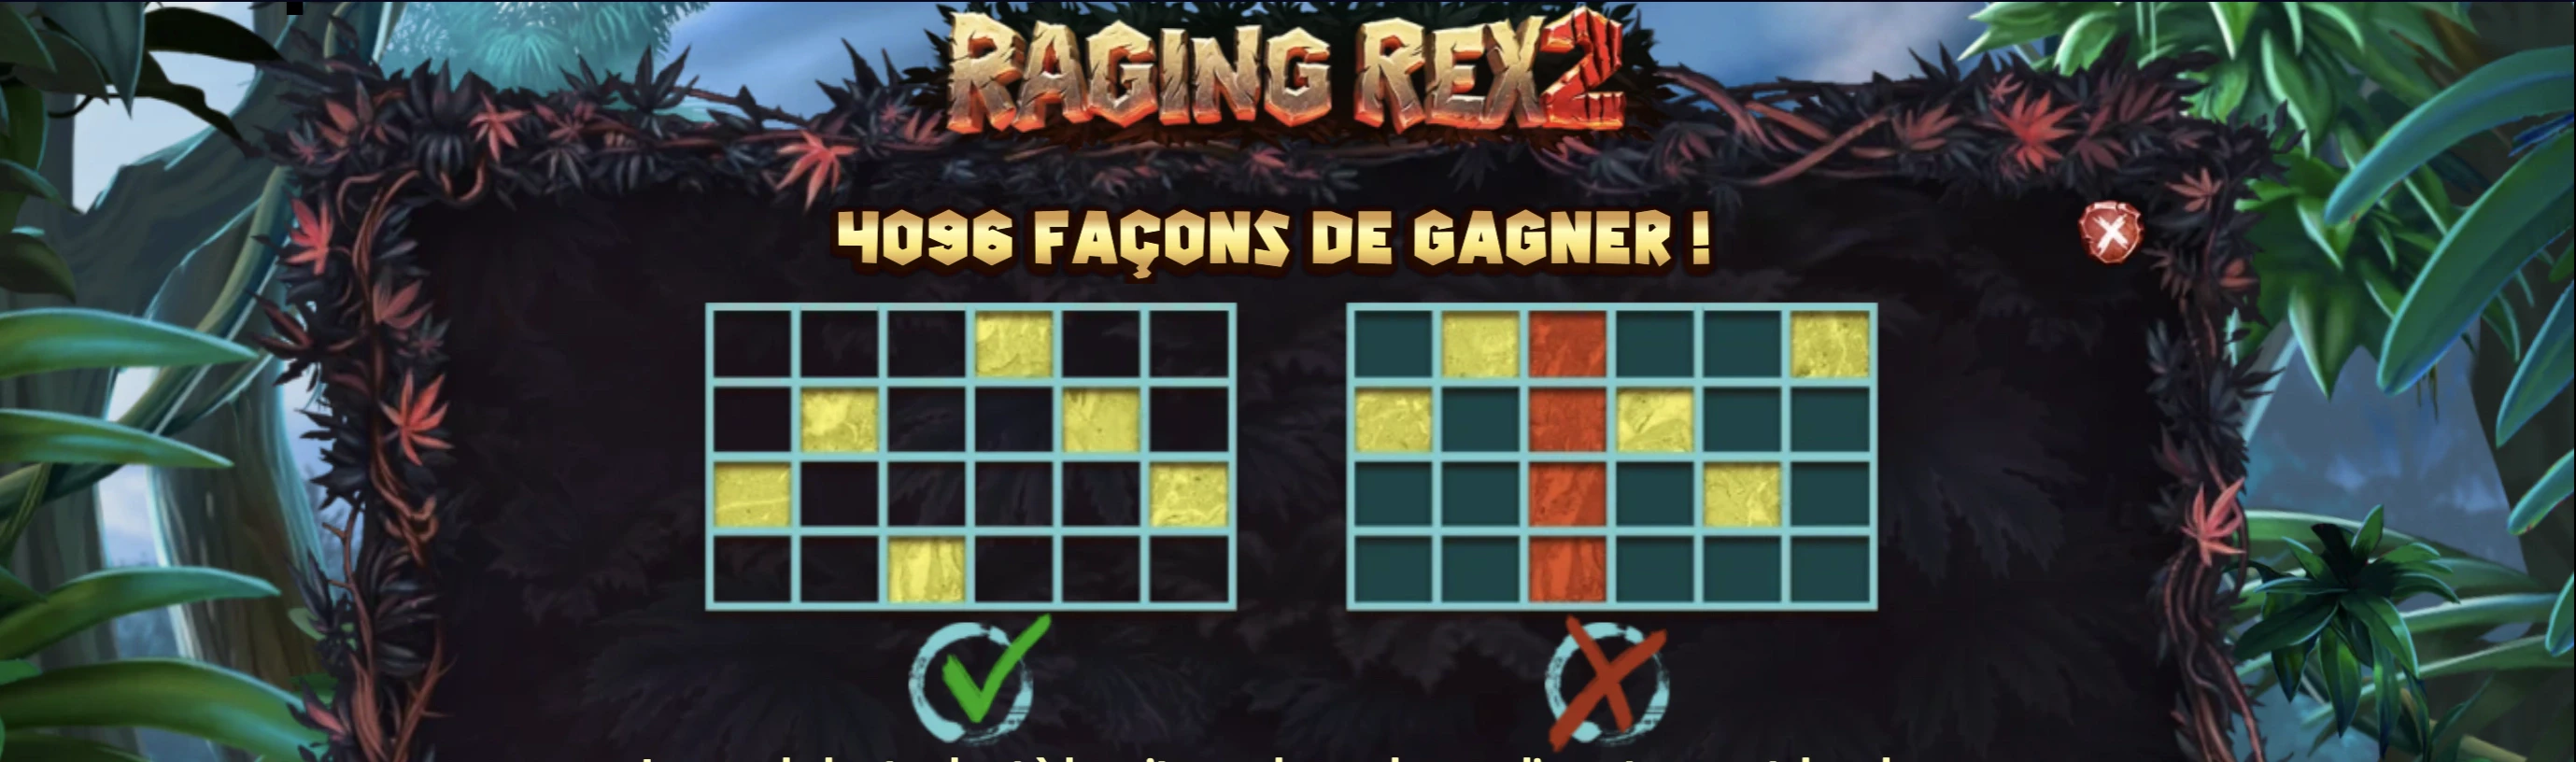 Les différentes connexions disponibles sur la machine a sous Raging Rex 2 de Play’n GO